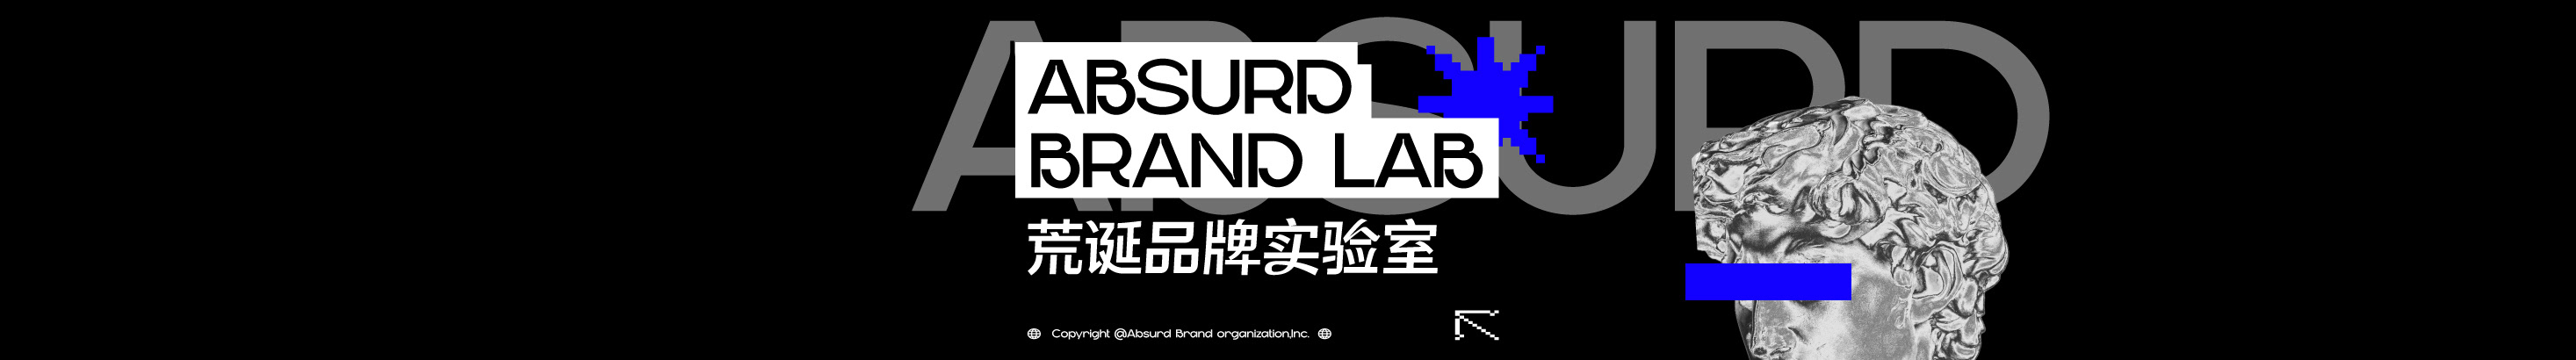 荒誕想象 Absurd lab's profile banner